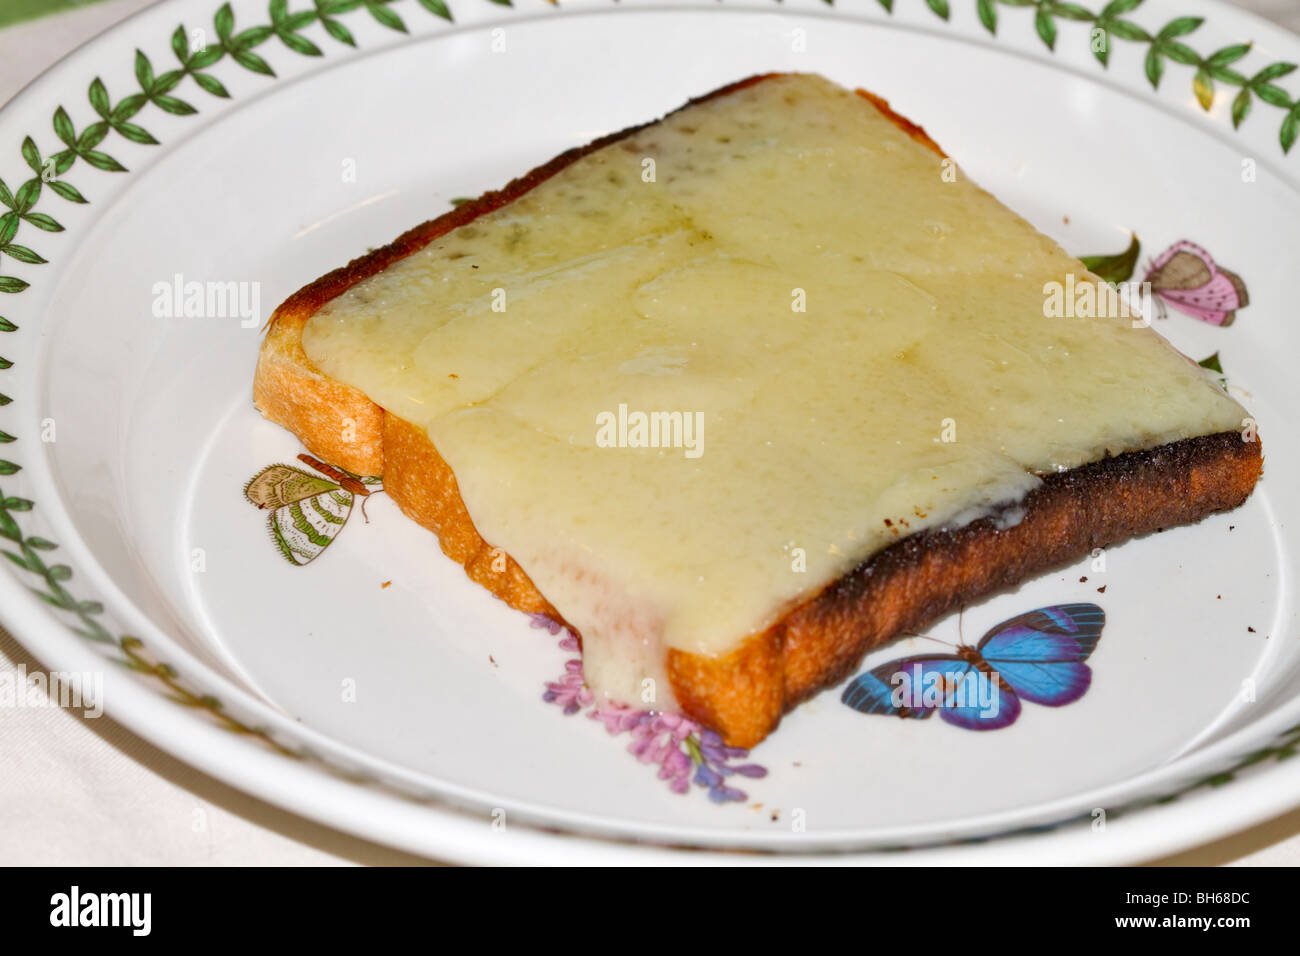 Le fromage sur le pain grillé. Fromage Gruyère fondue sur un morceau de pain blanc grillé. Banque D'Images